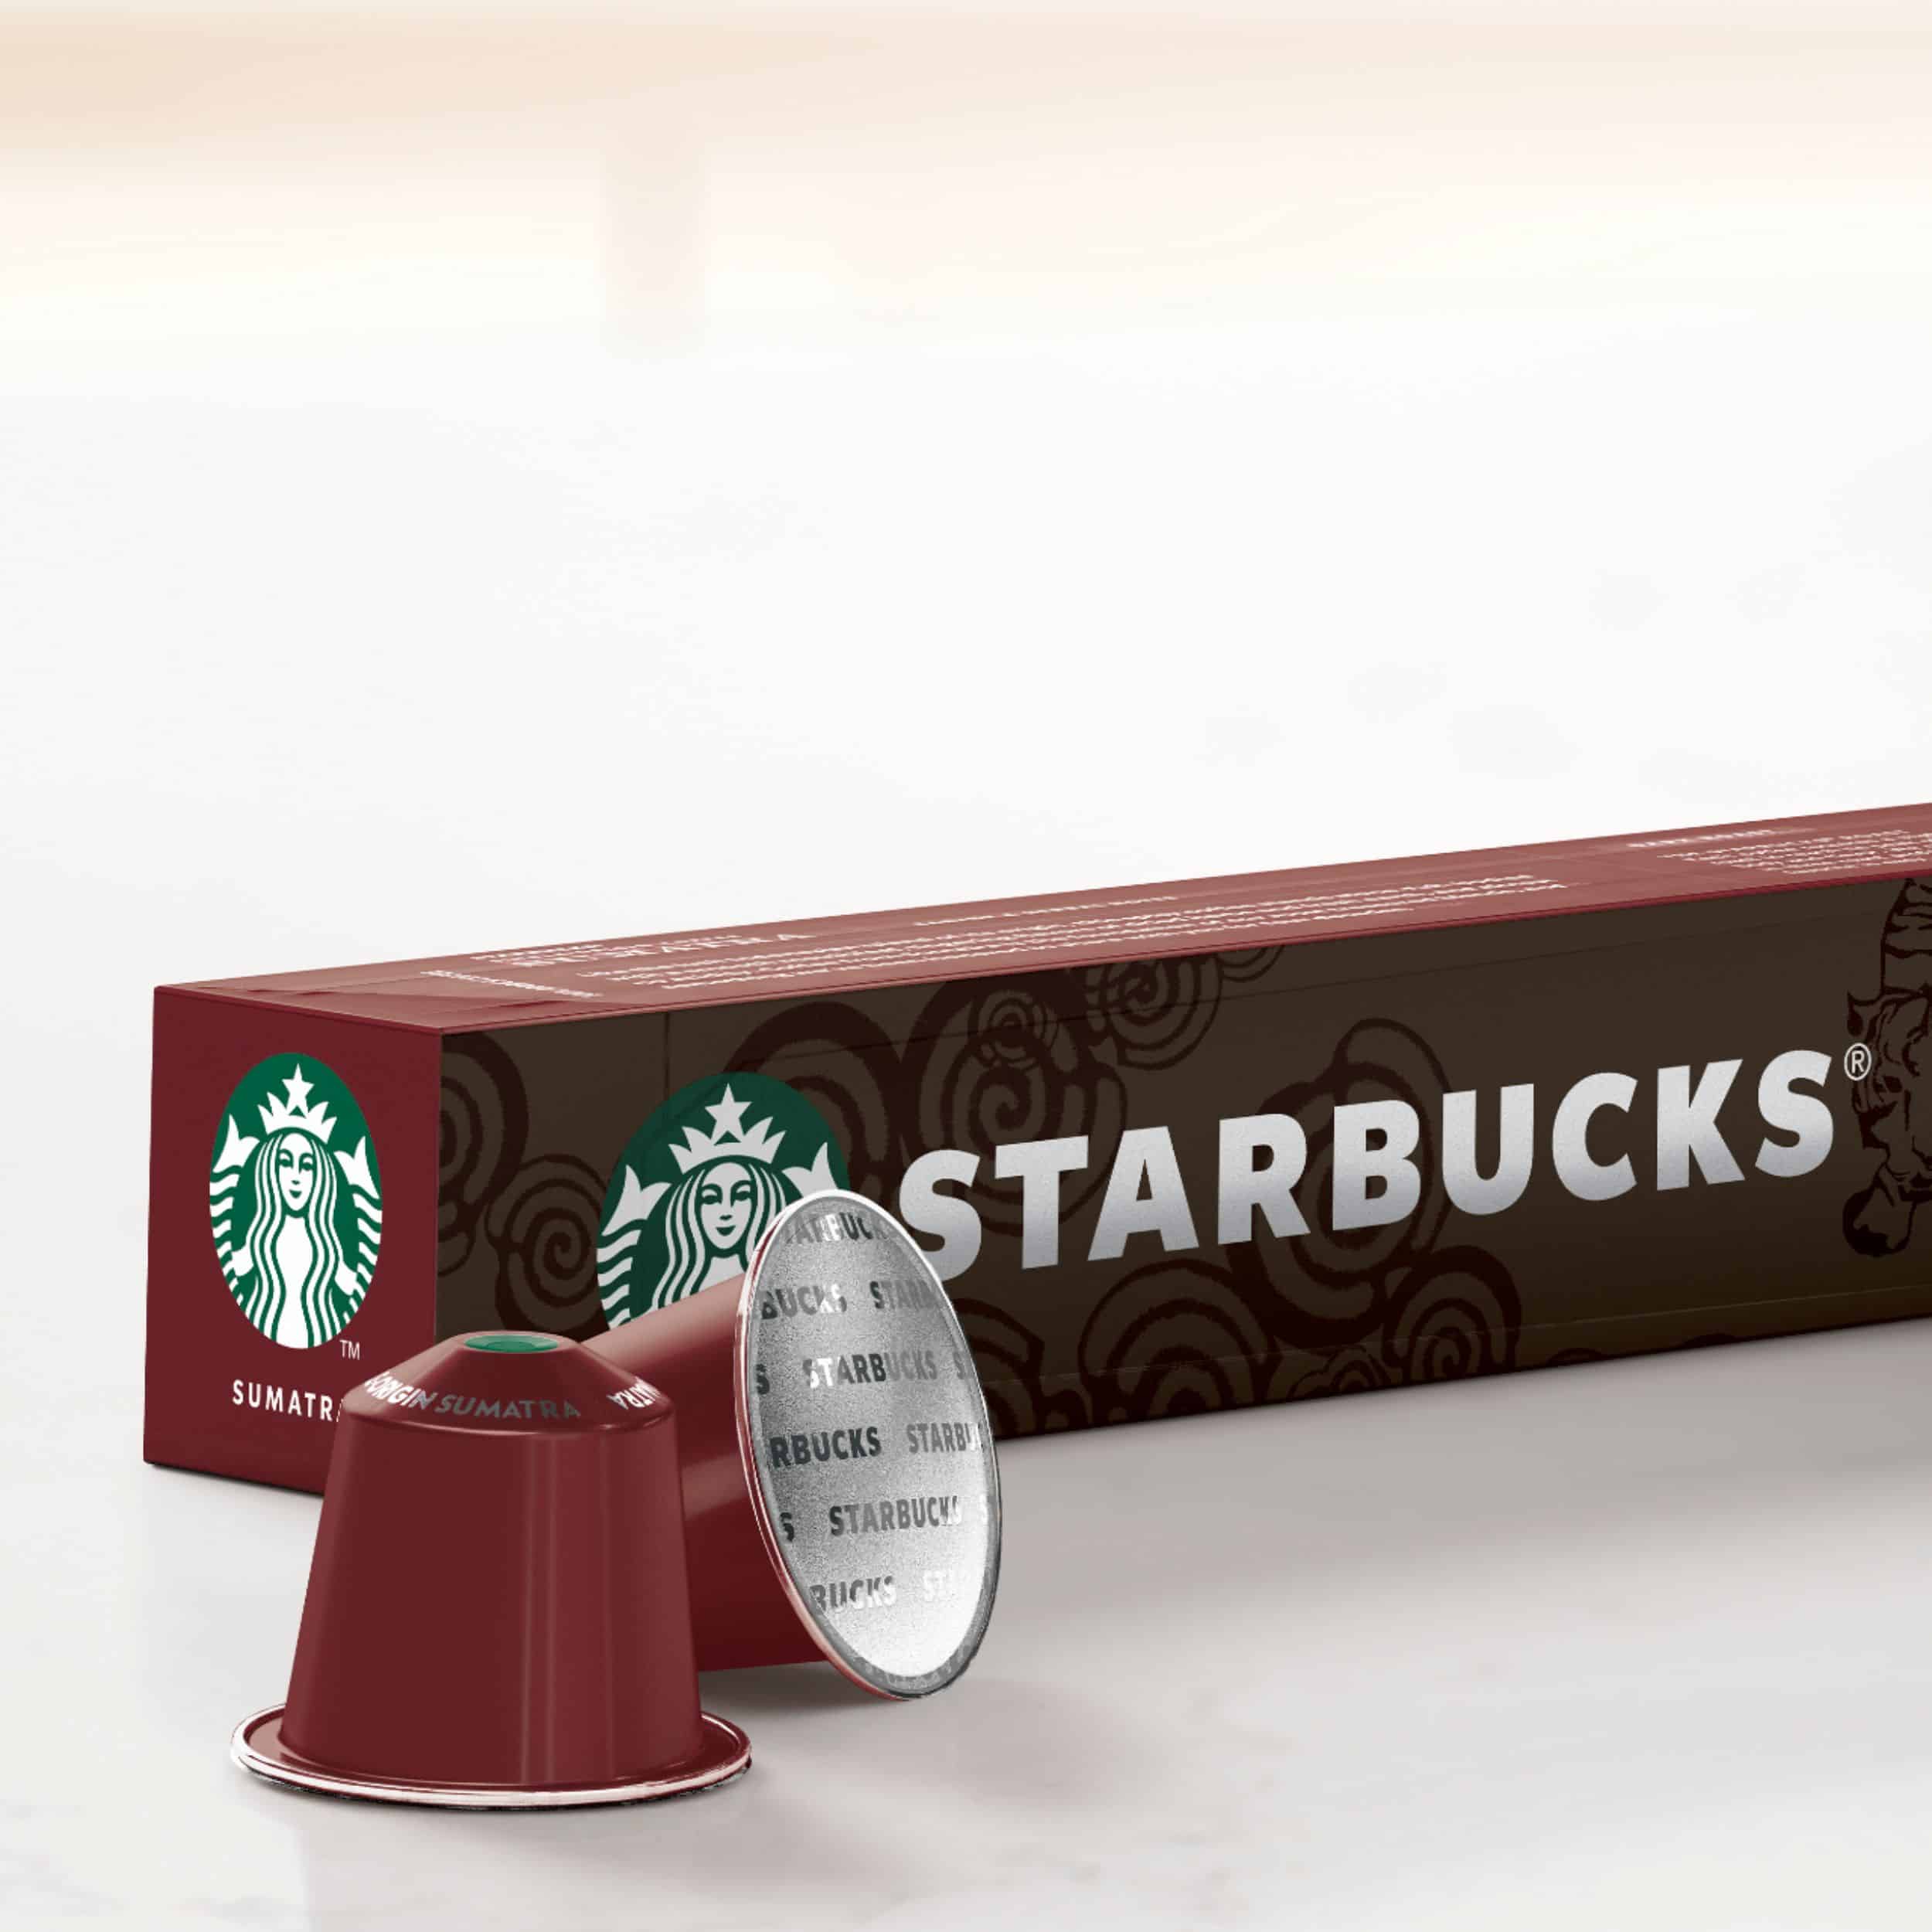 Starbucks Nespresso Sumatra Coffee Pods (30